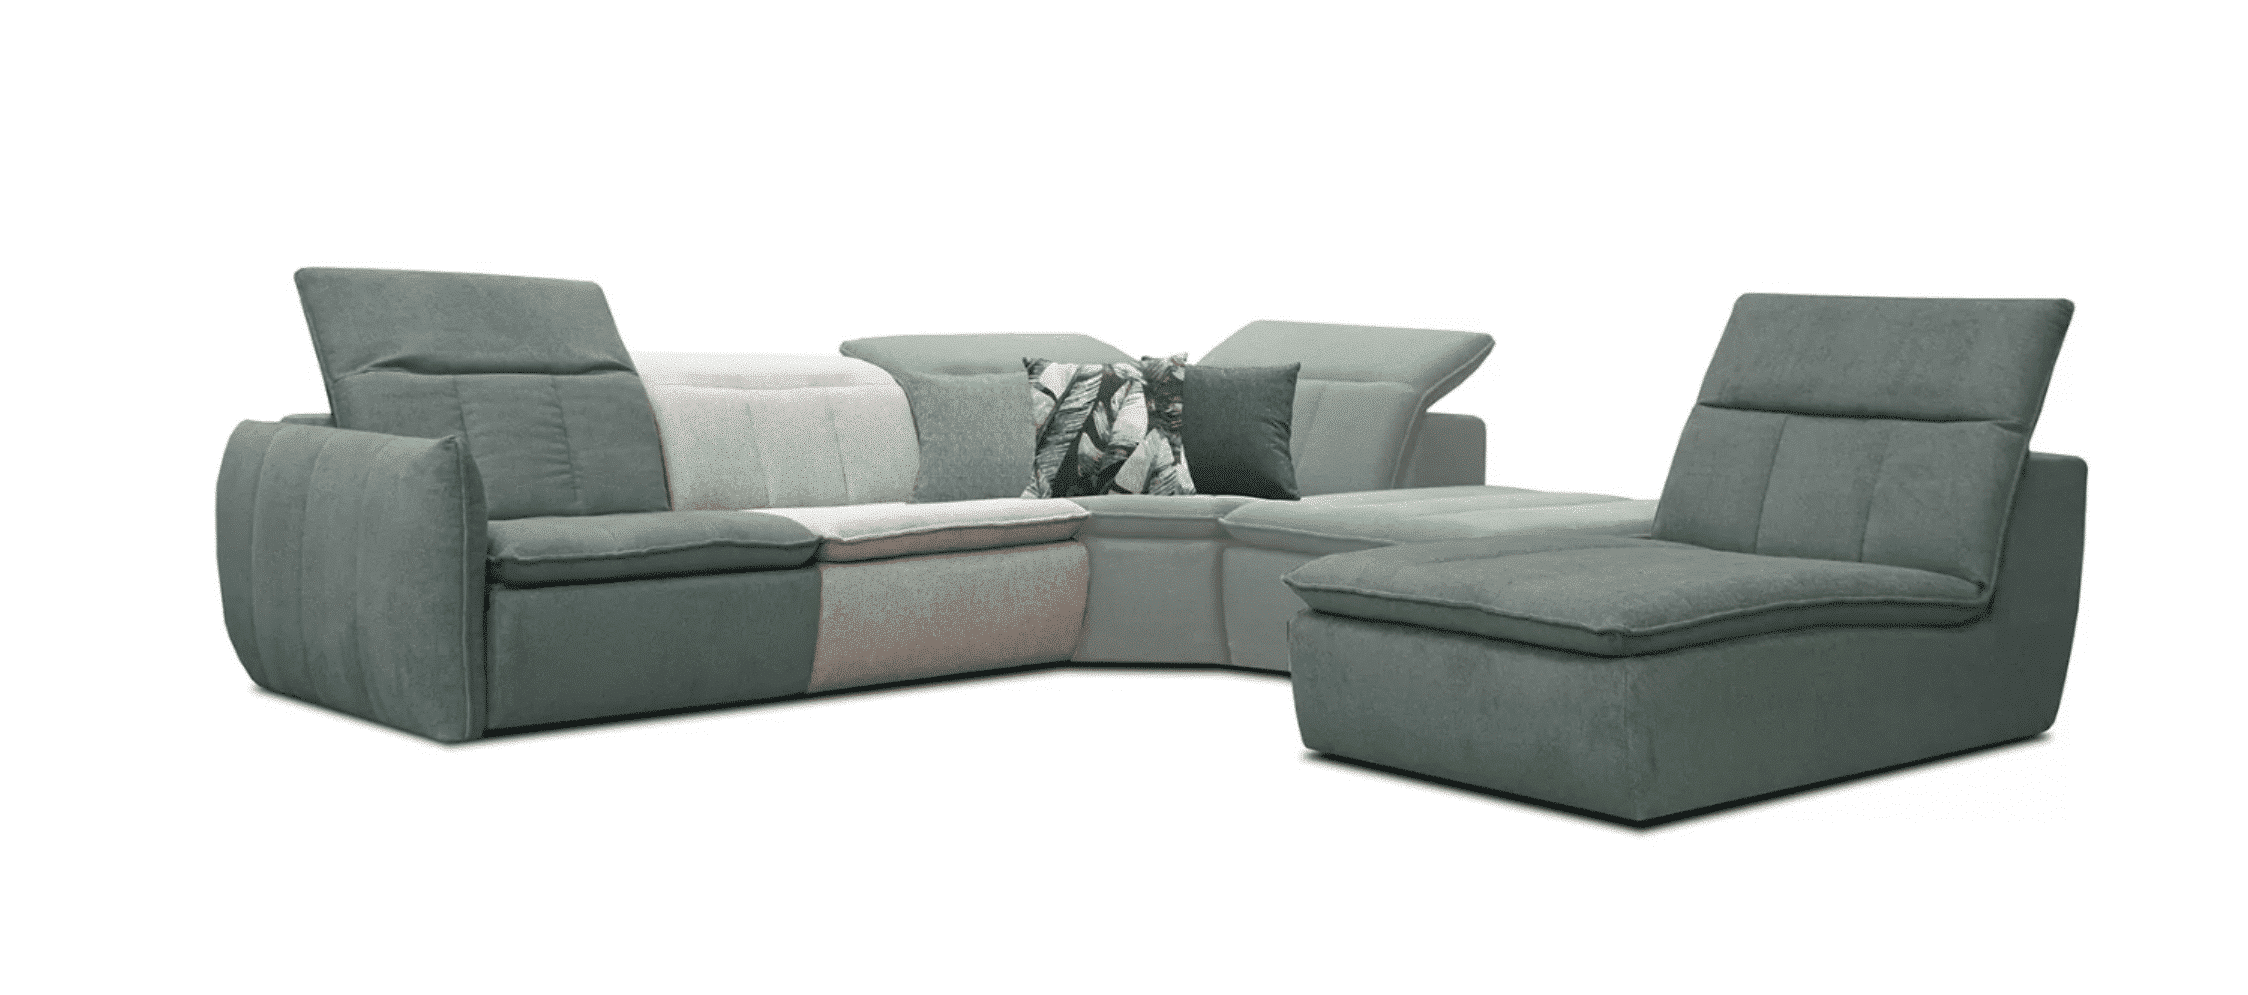 LINA este o canapea modulară de care nu te vei obosi niciodată. Poate fi compus liber datorită unei game largi de culori și umpluturi.